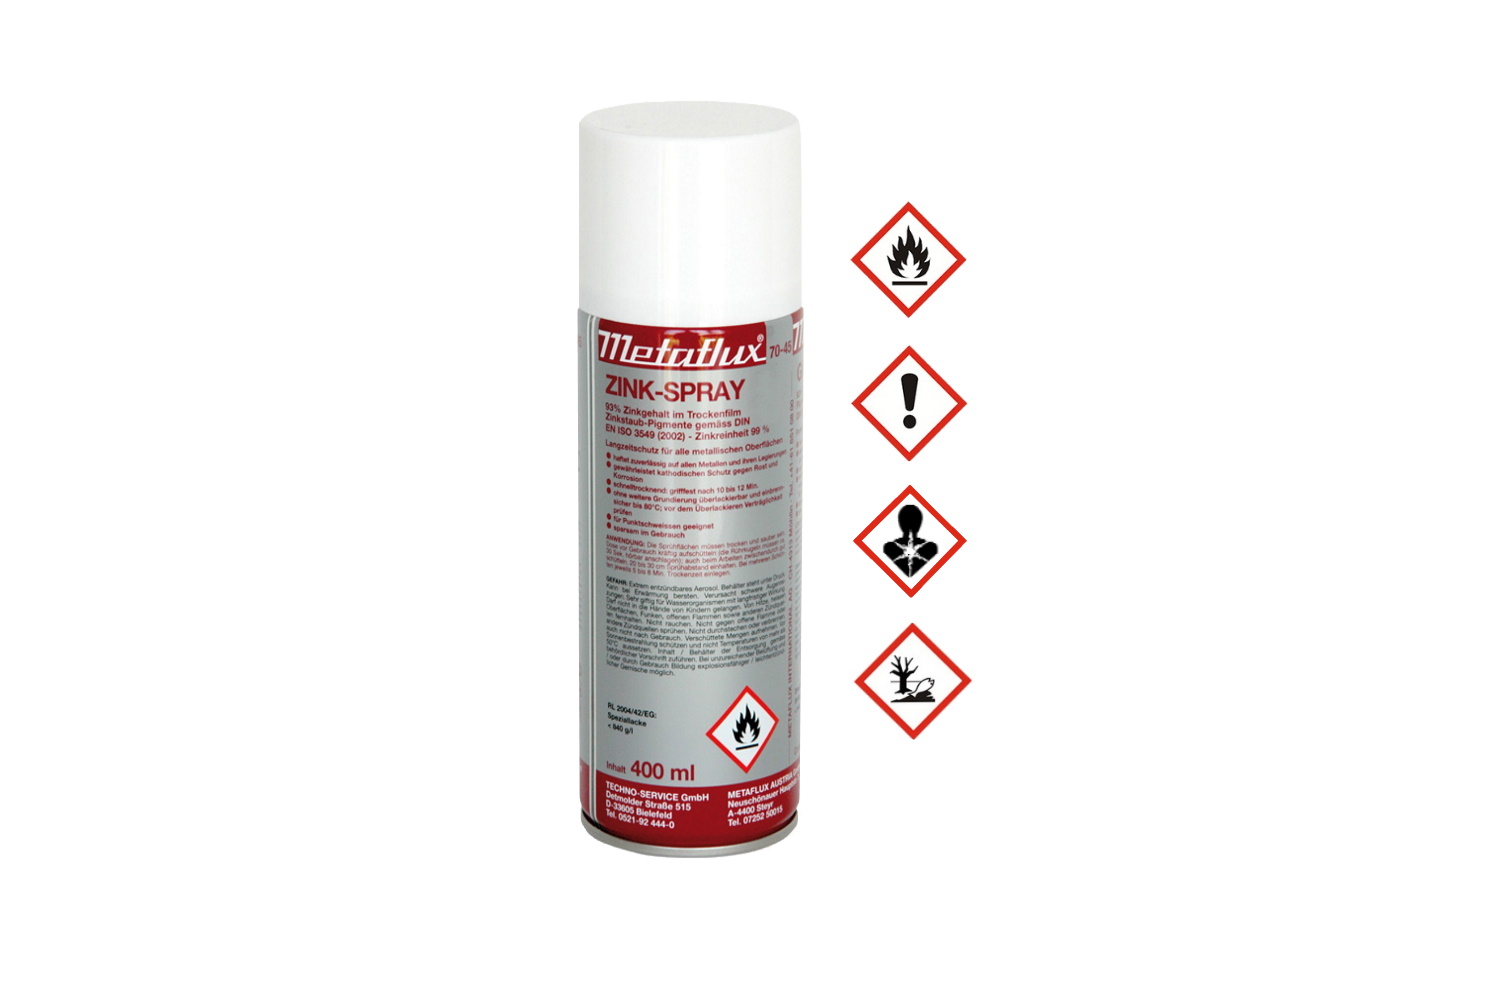 Zink-Spray 400ml Metaflux | 70-4500